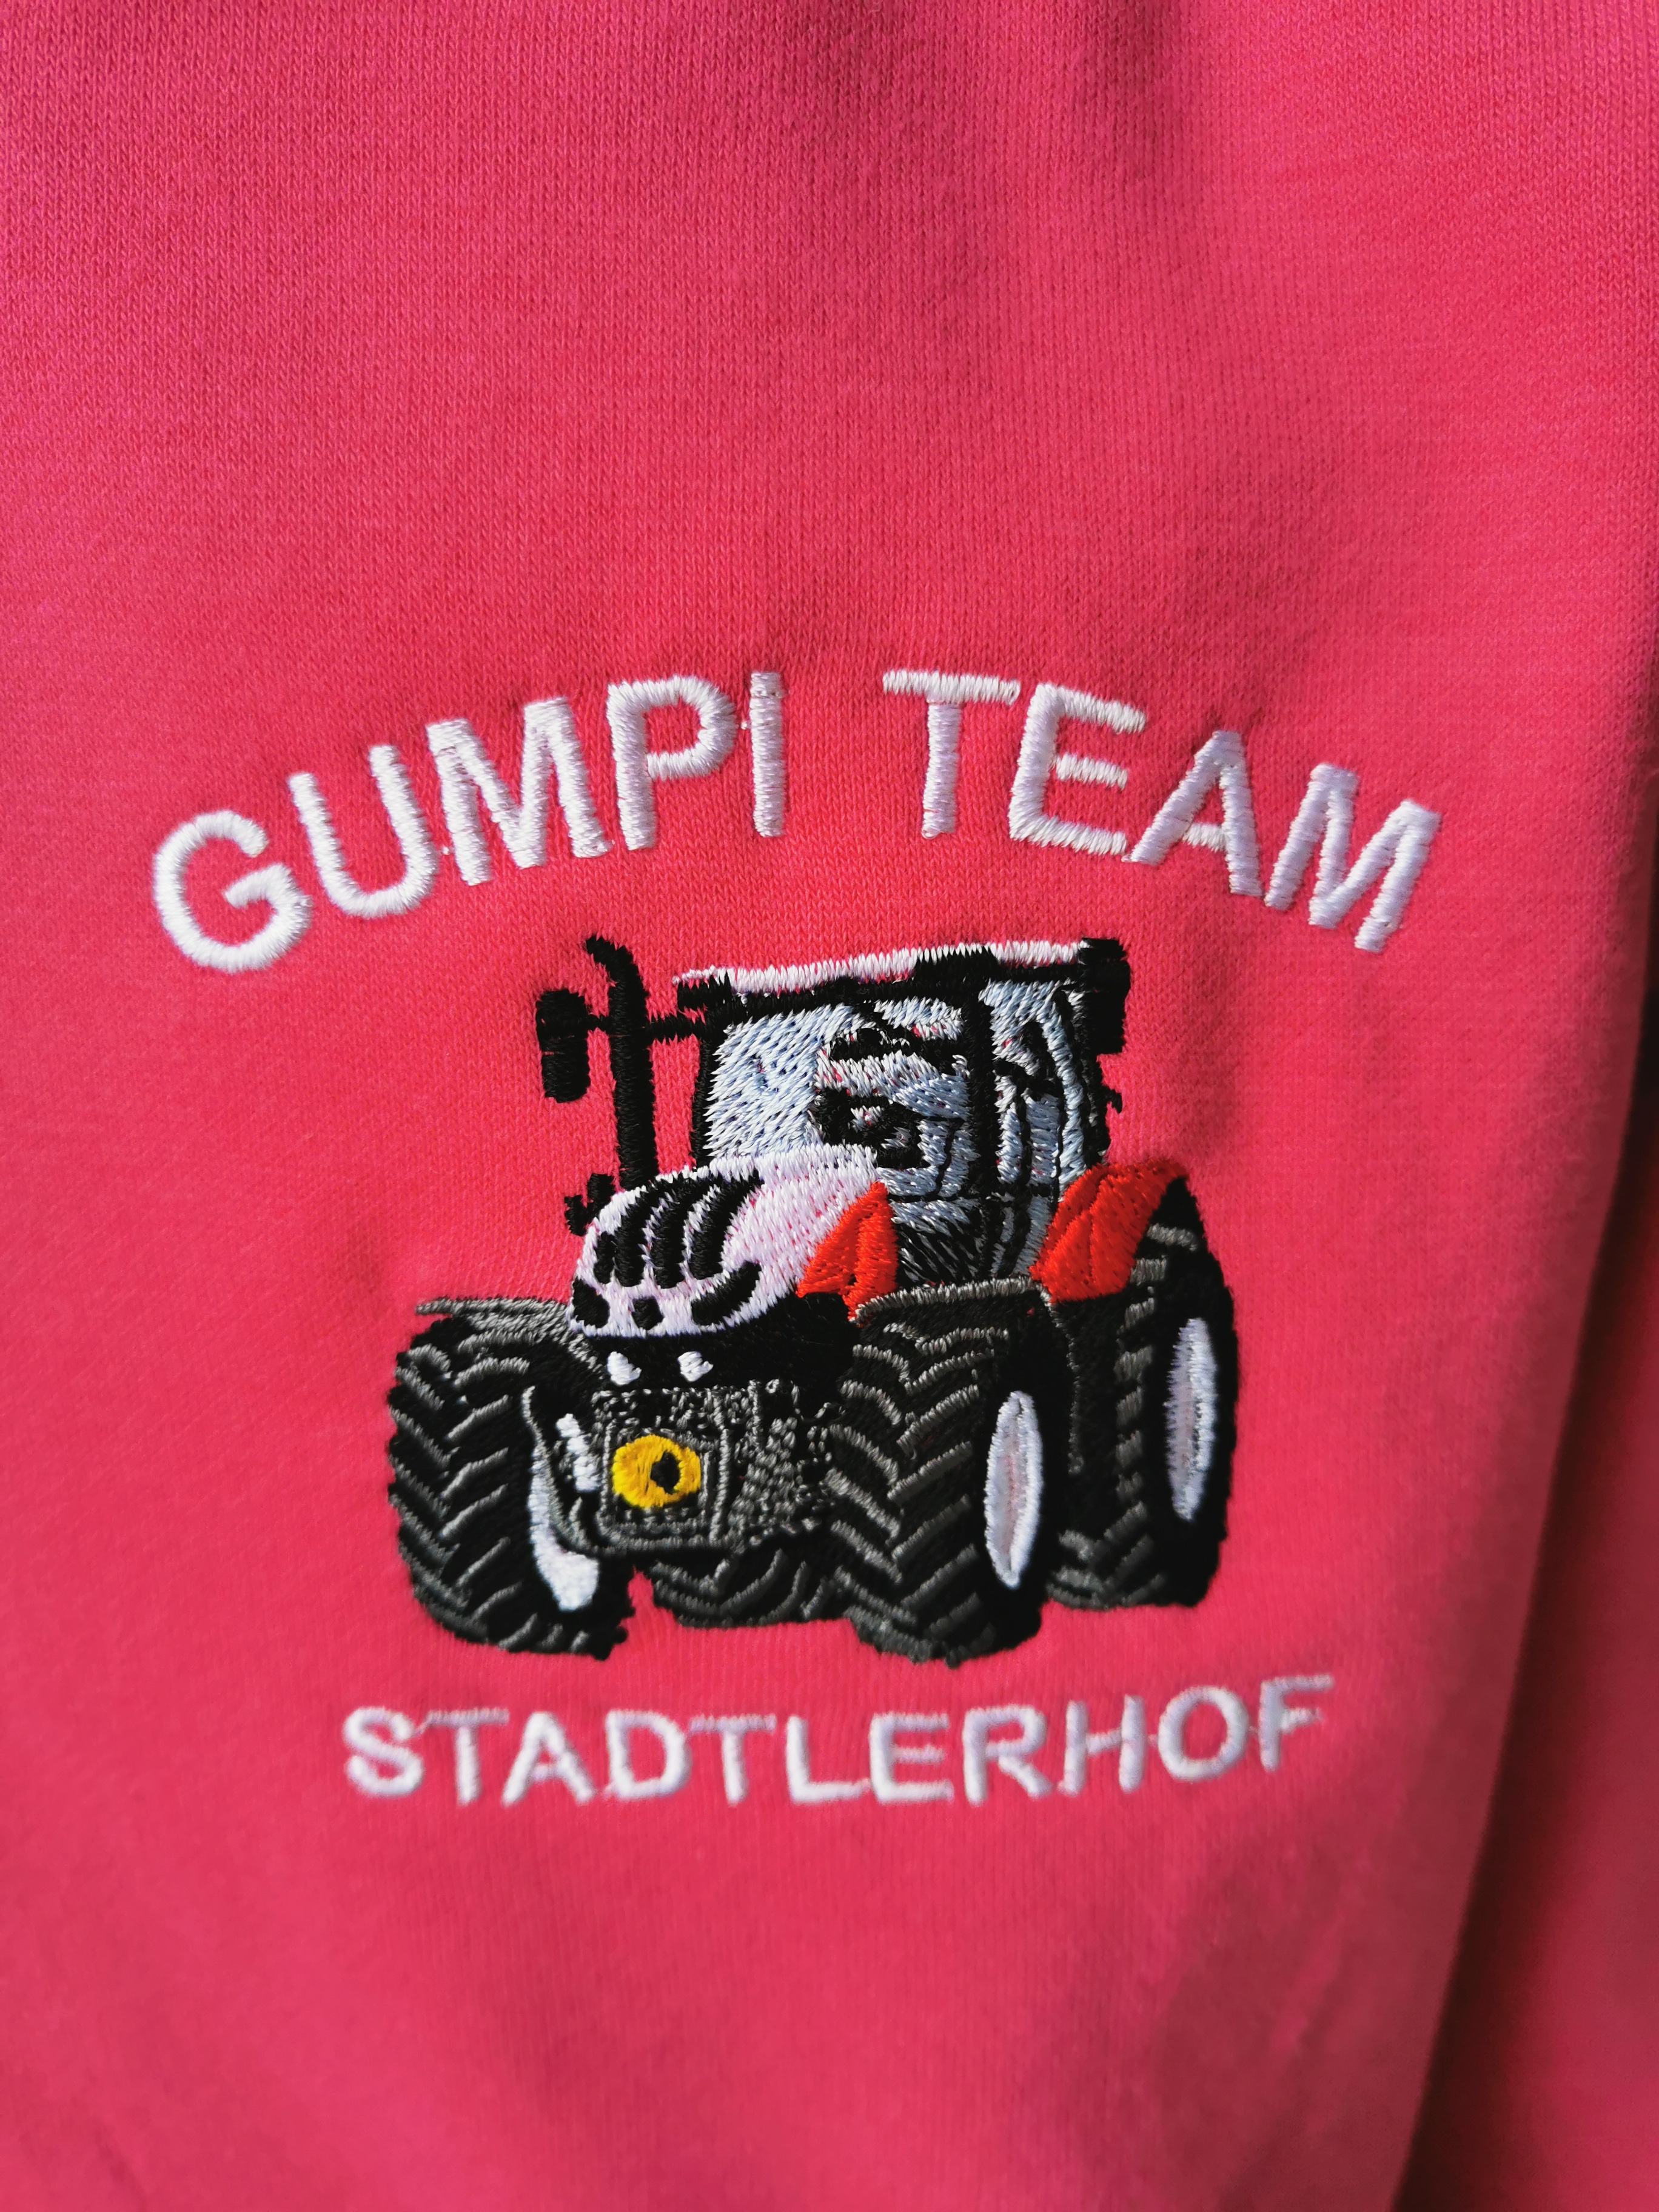 Damen Sweater pink mit Kapuze "Gumpi-Team" 